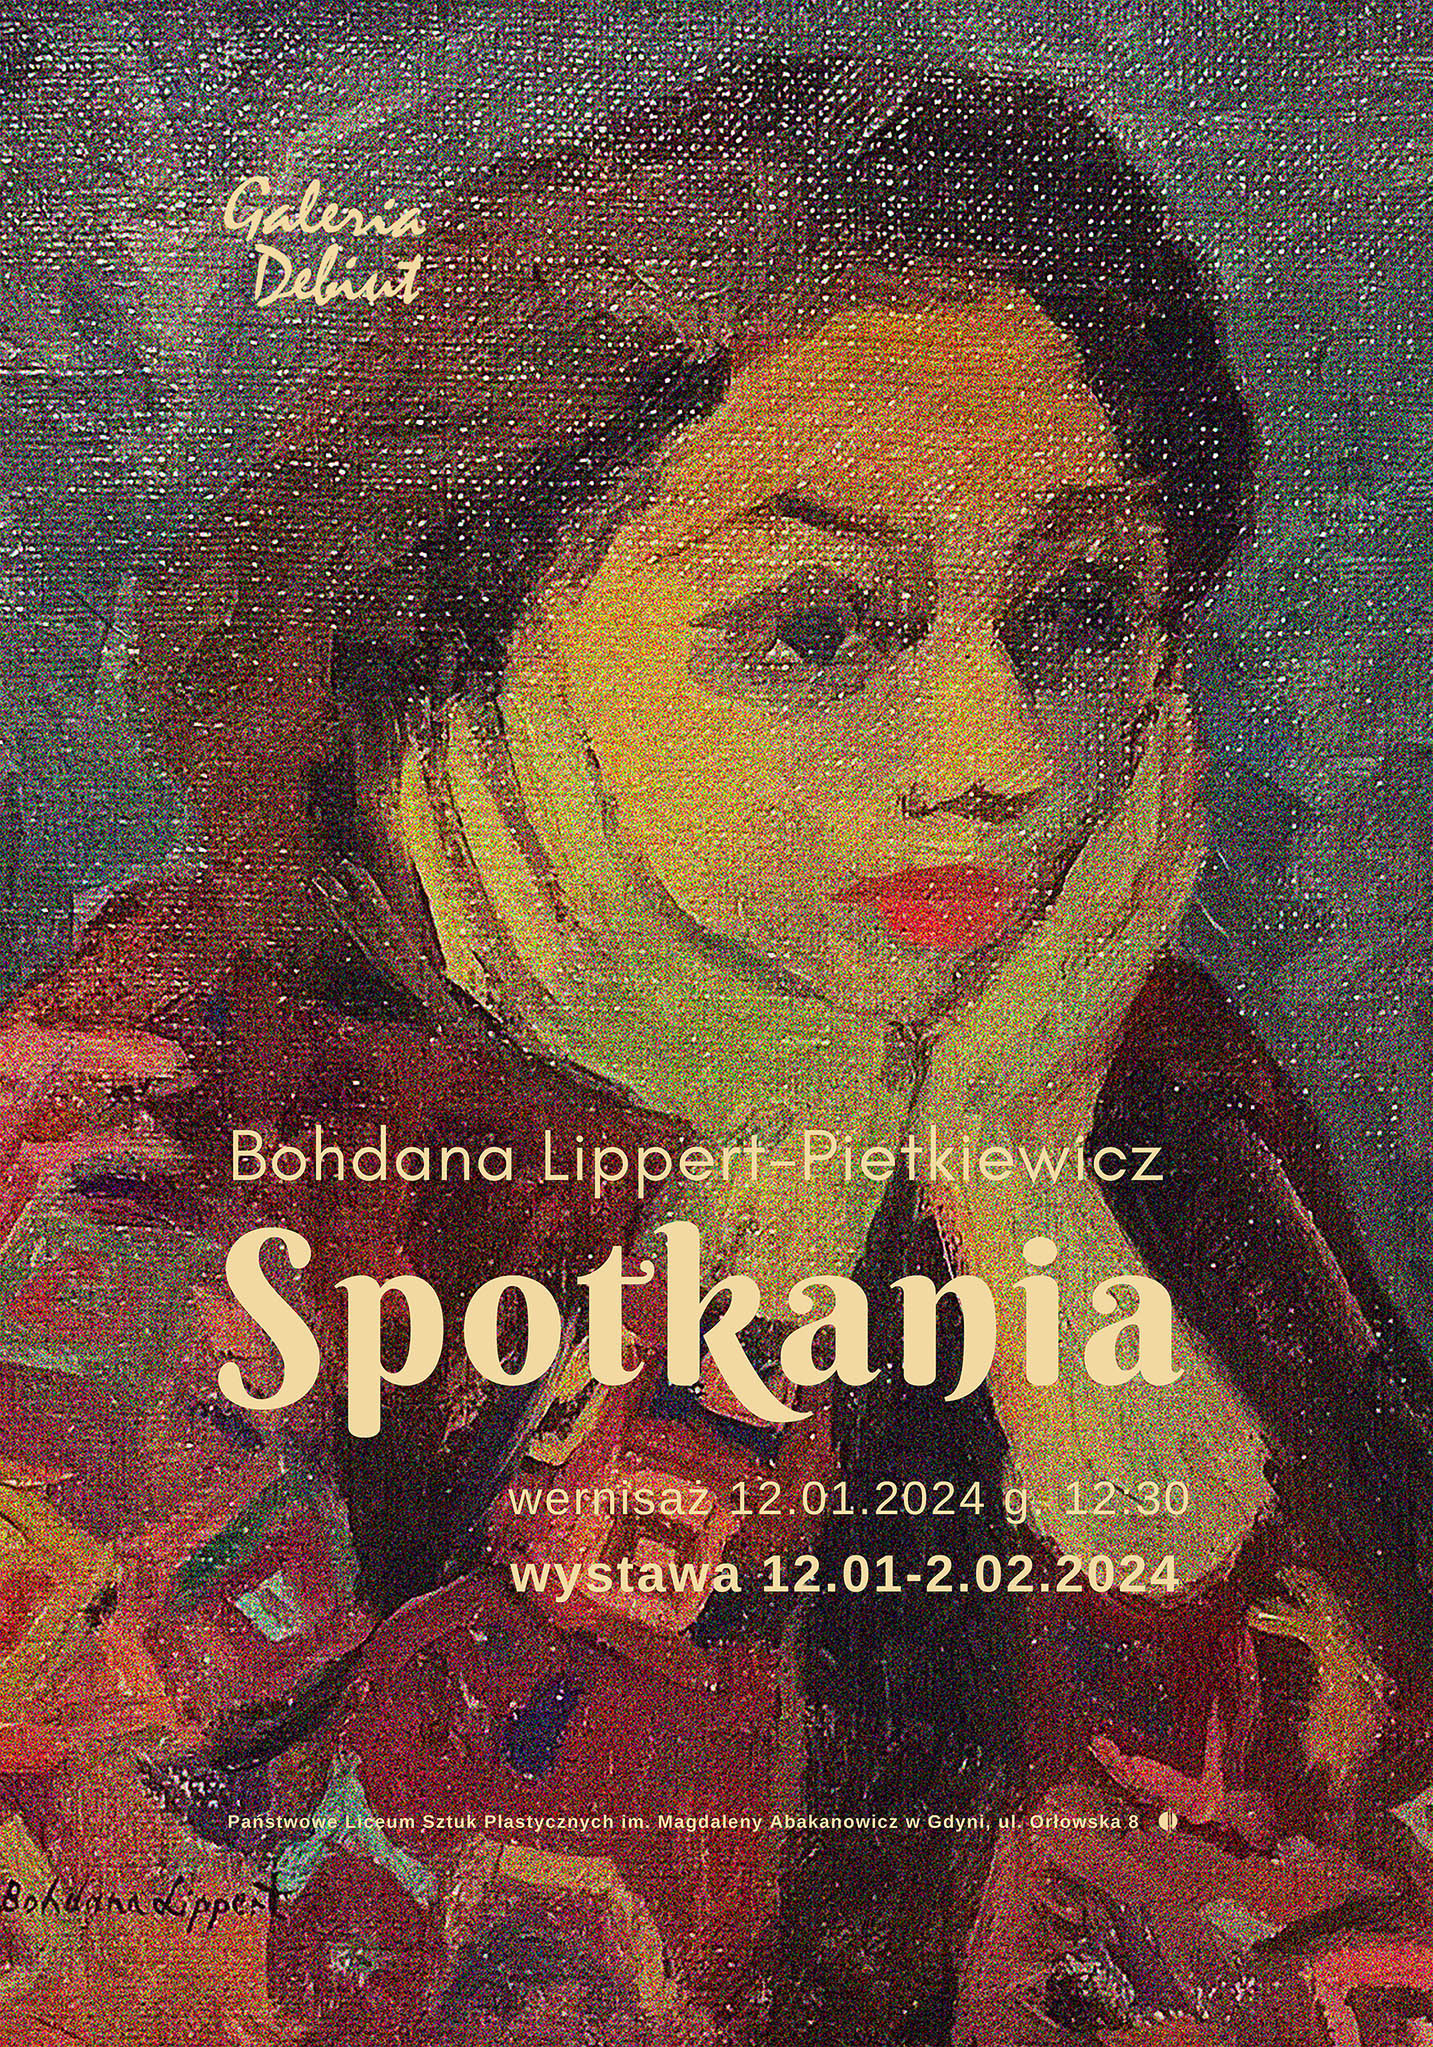 Spotkania - wystawa malarstwa Bohdany Lippert-Pietkiewicz